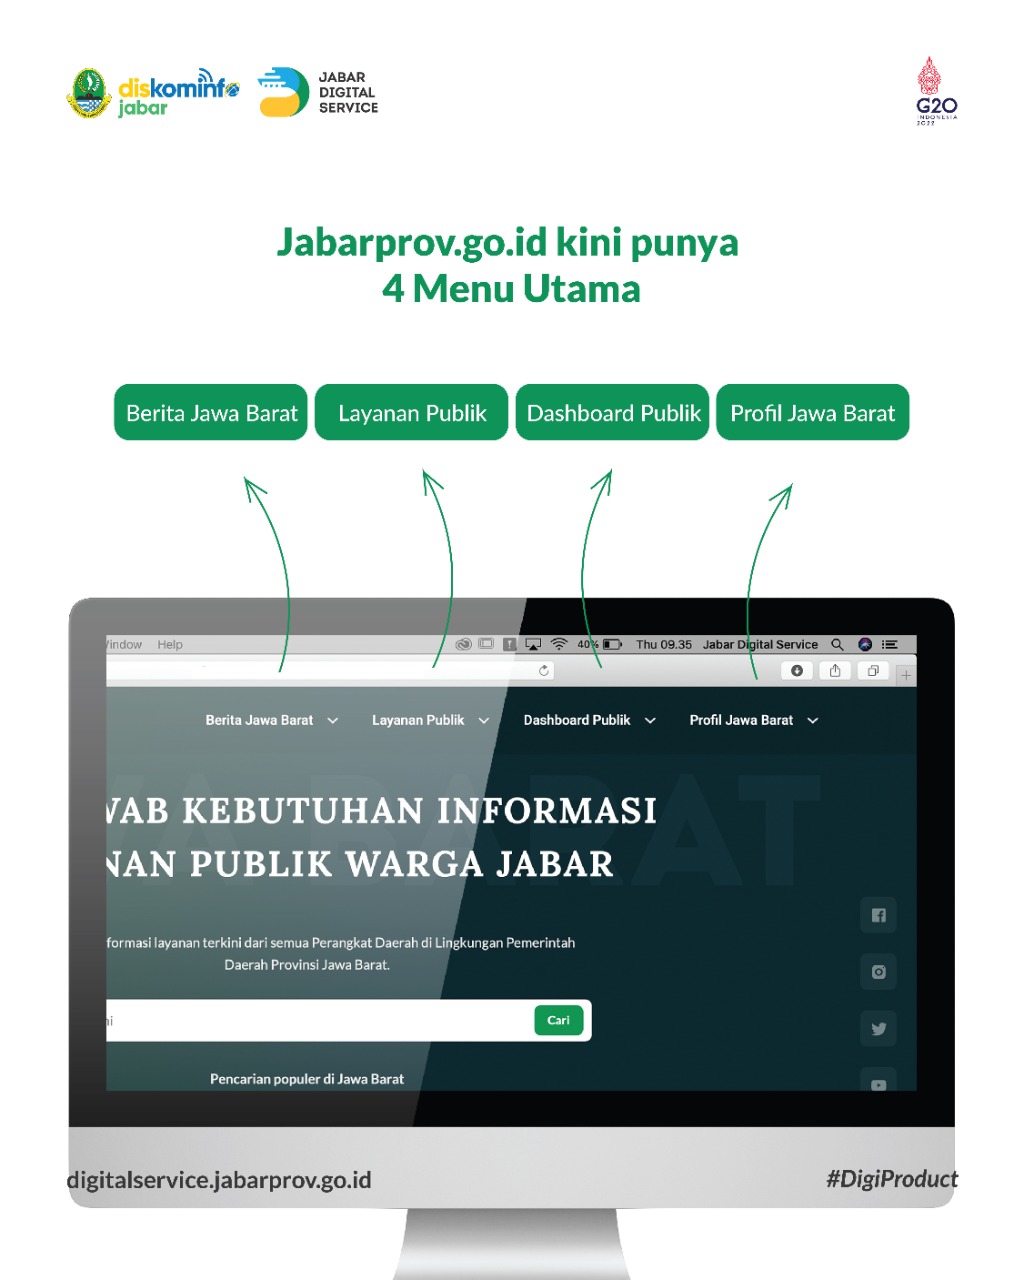 Website Resmi Pemda Provinsi Jabar Versi Baru: Hadirkan Informasi Layanan Publik dan Berita Daerah Terpercaya